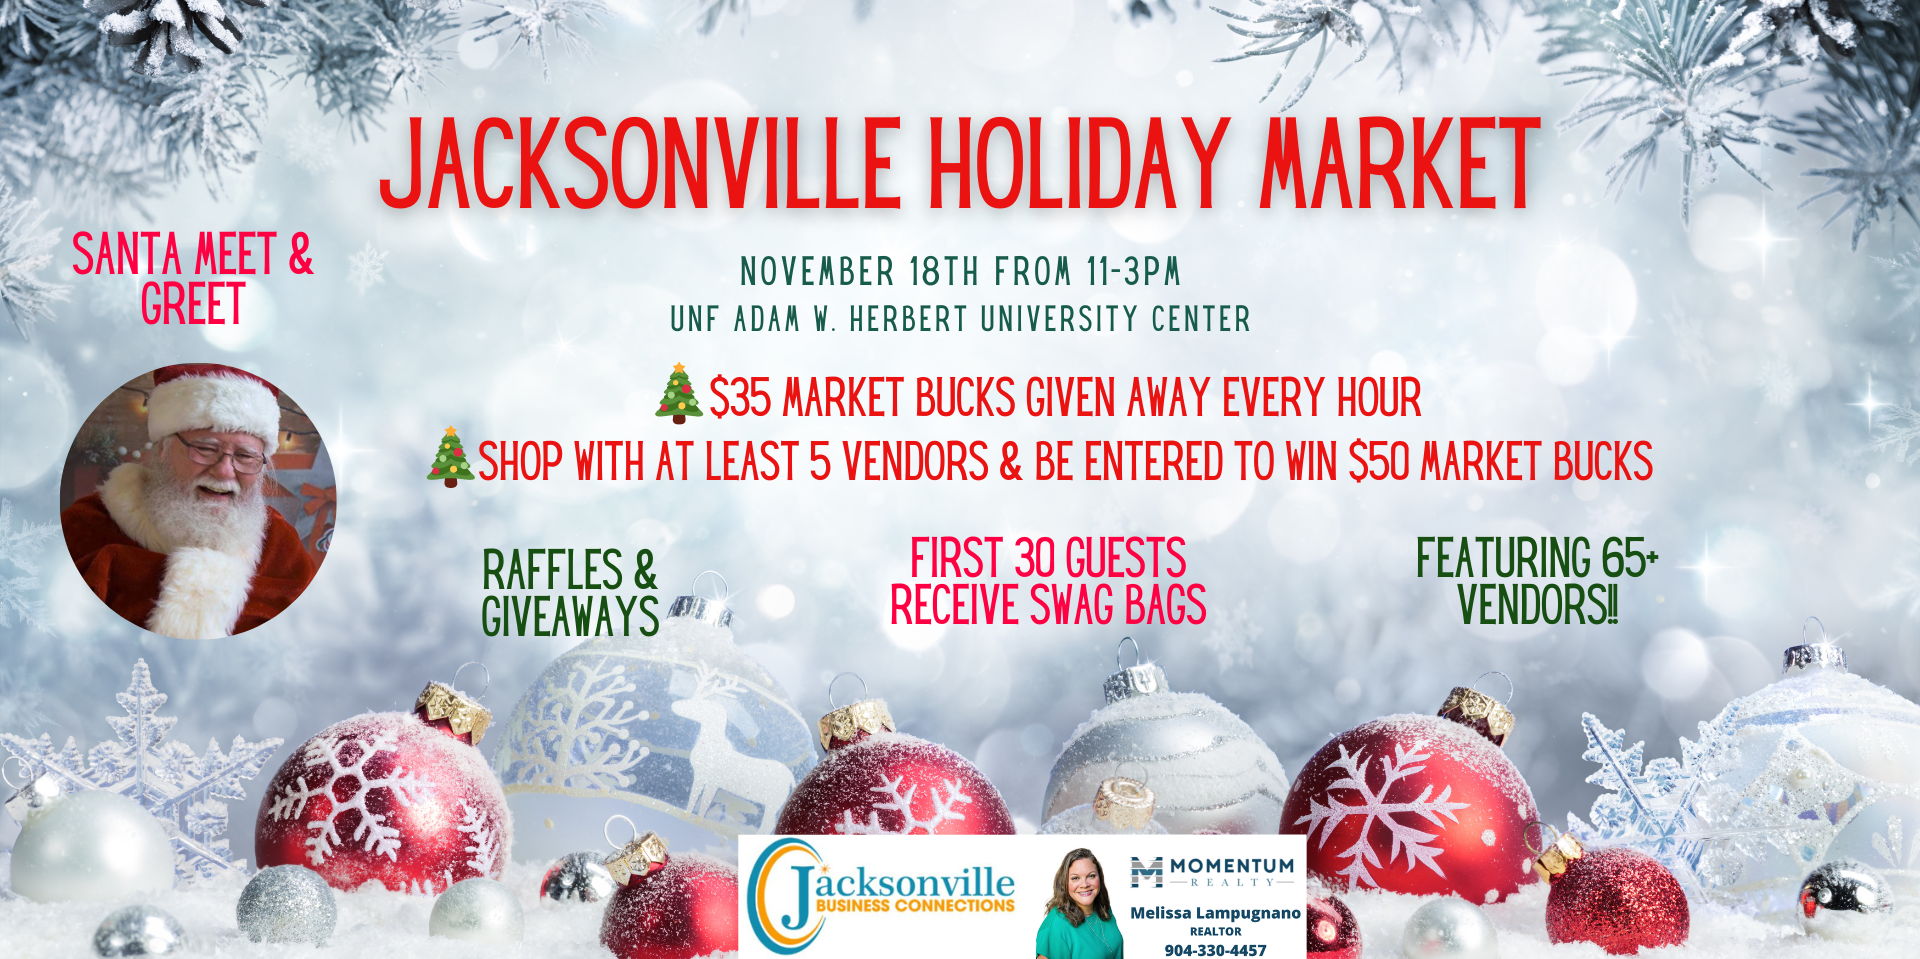 Jacksonville Holiday Market promotional image